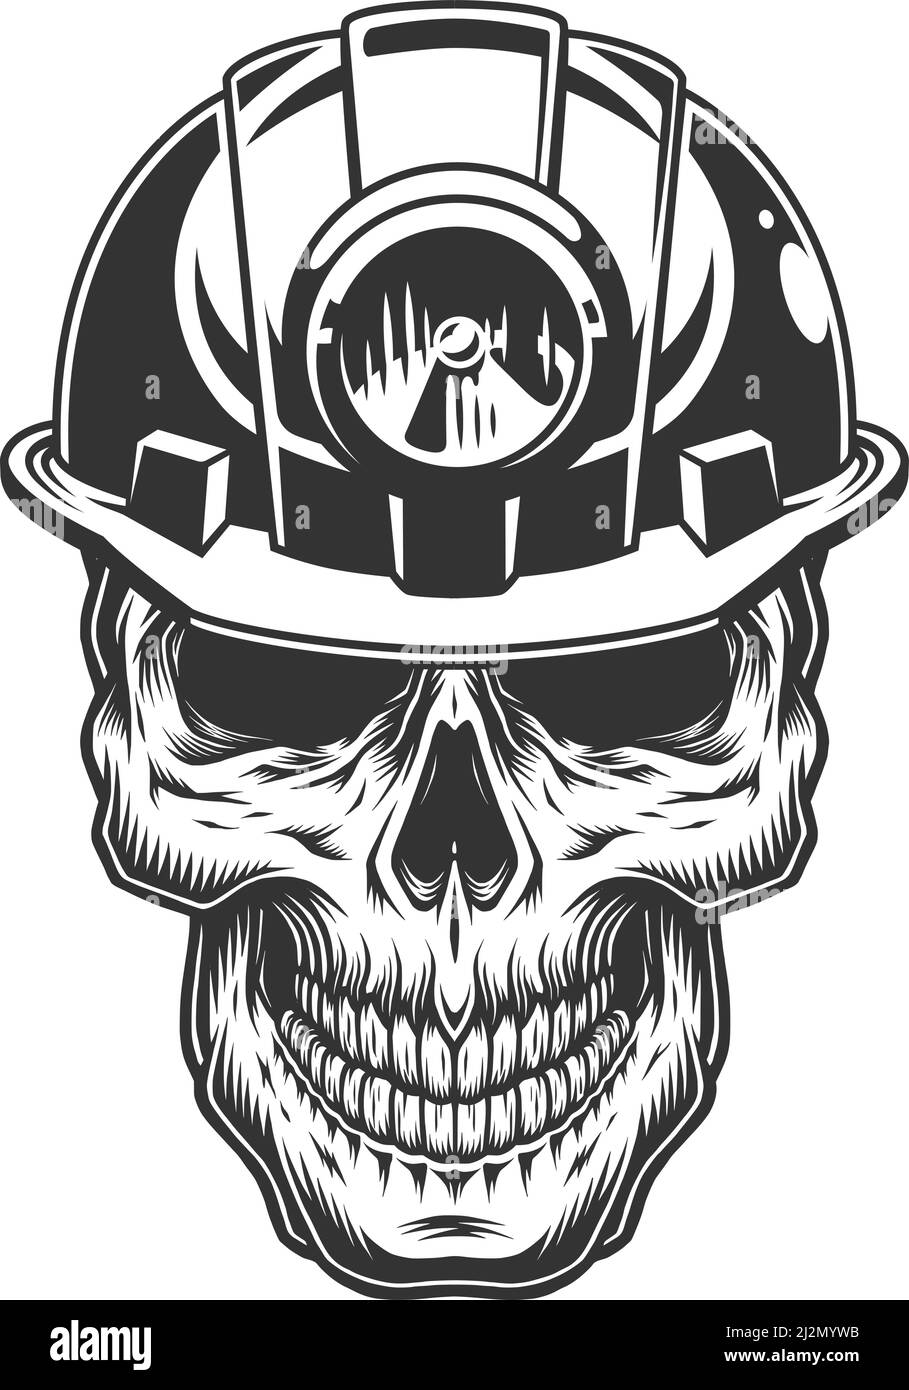 Skull in the miner helmet. Vector vintage illustration Stock Vector ...